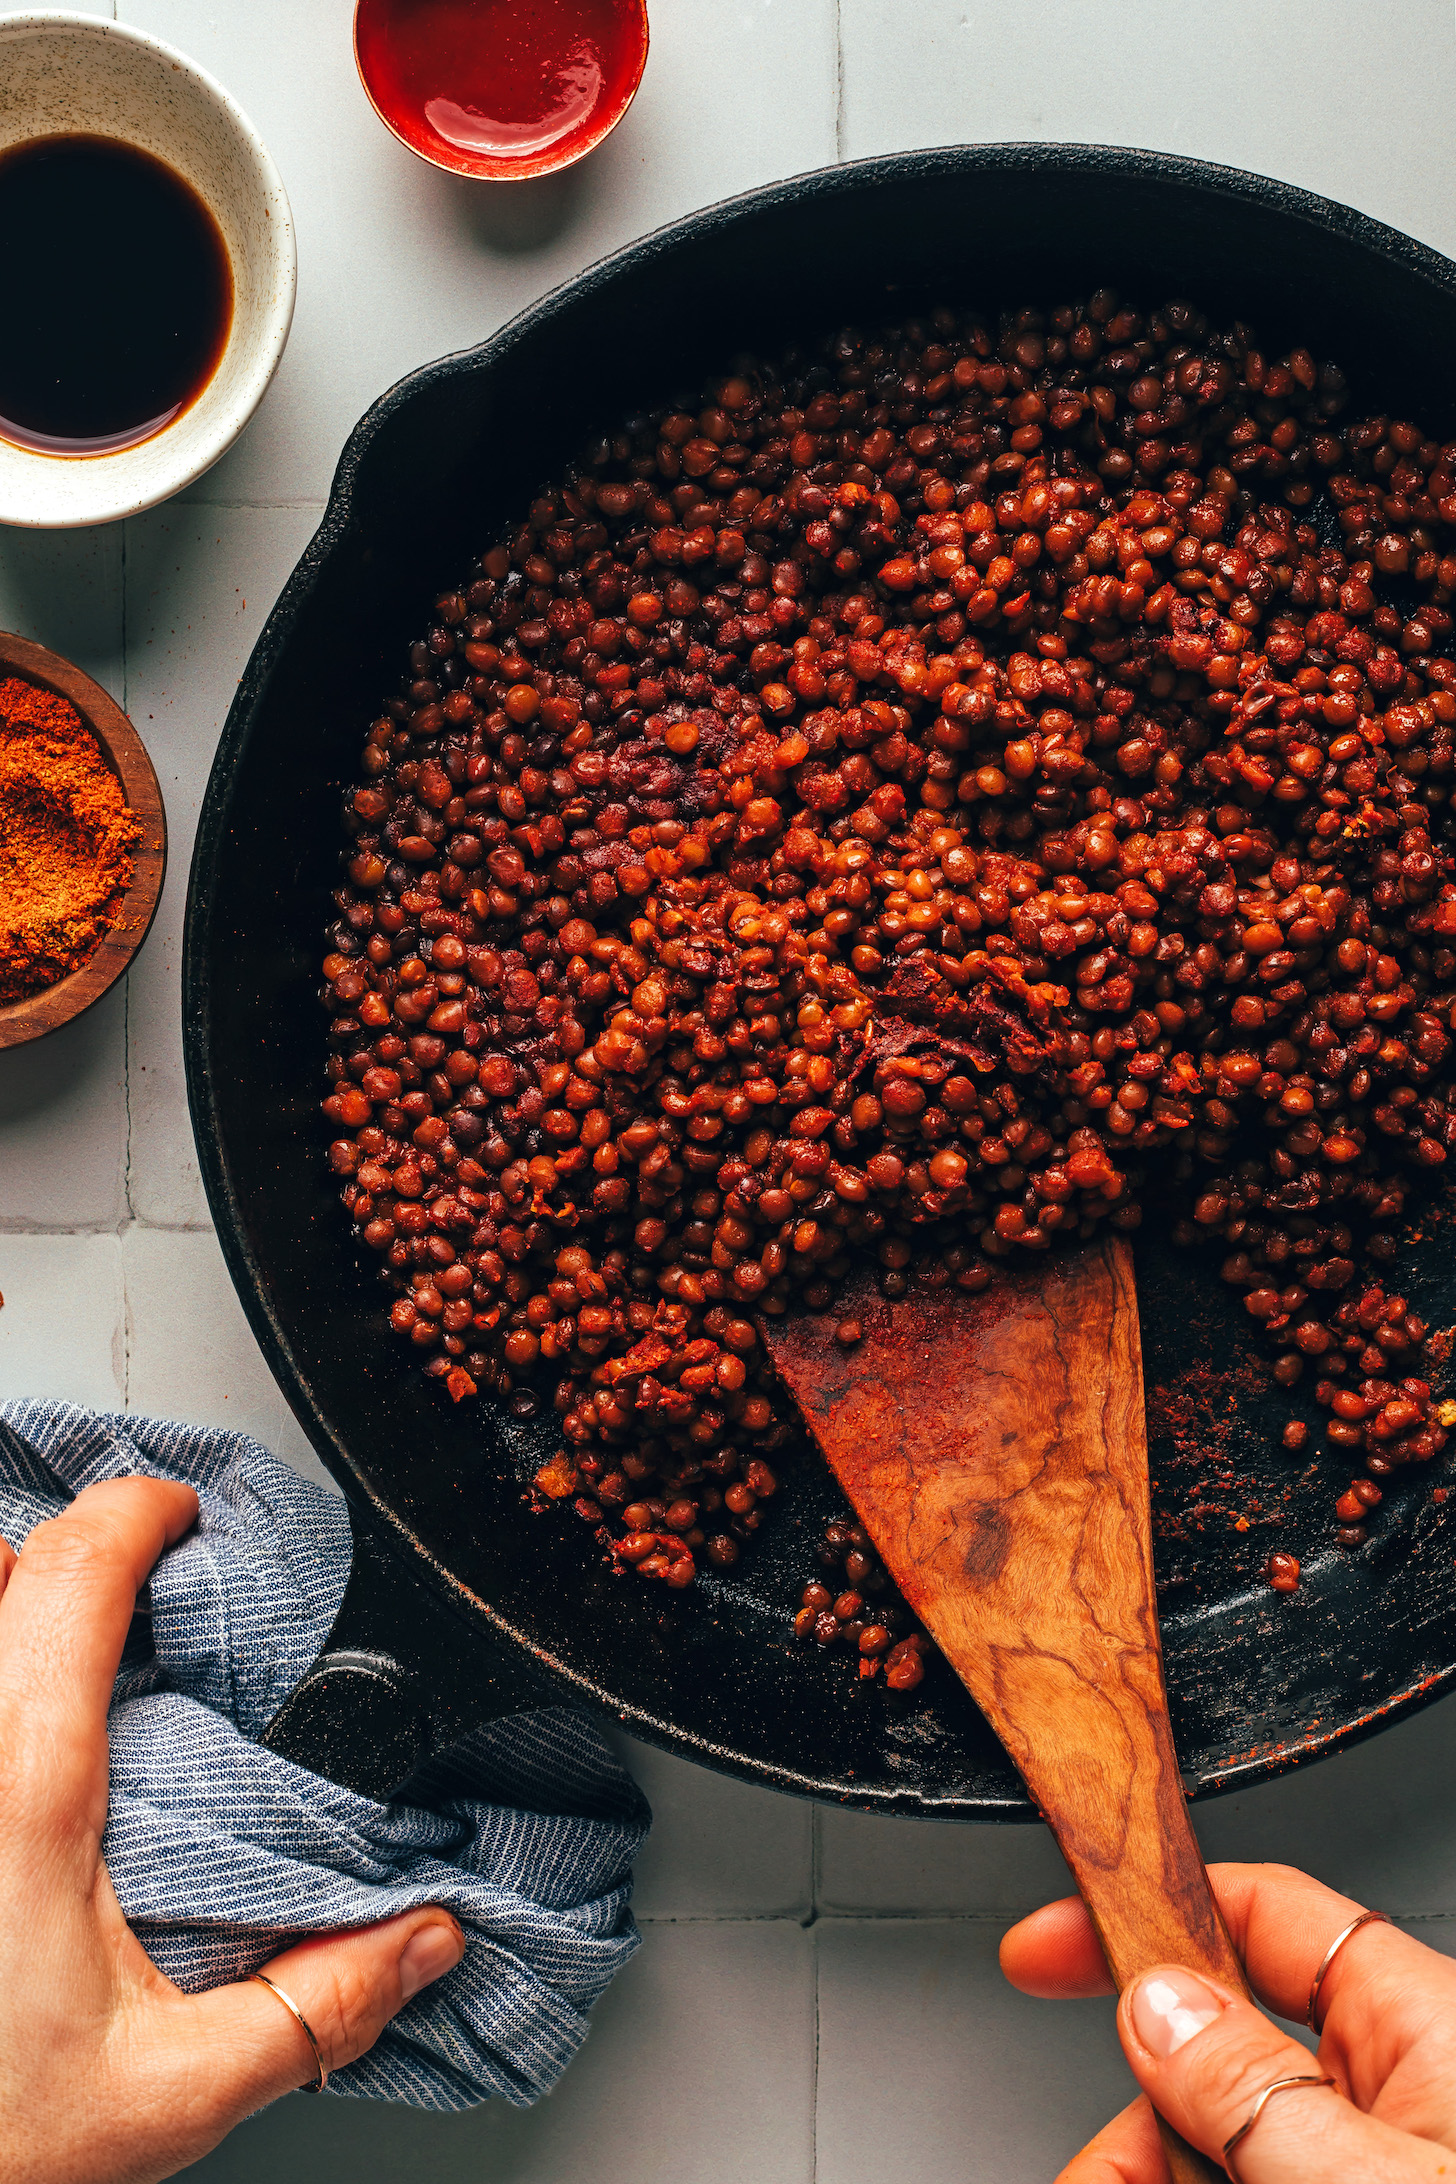 Sautéing lentil chili in a skillet